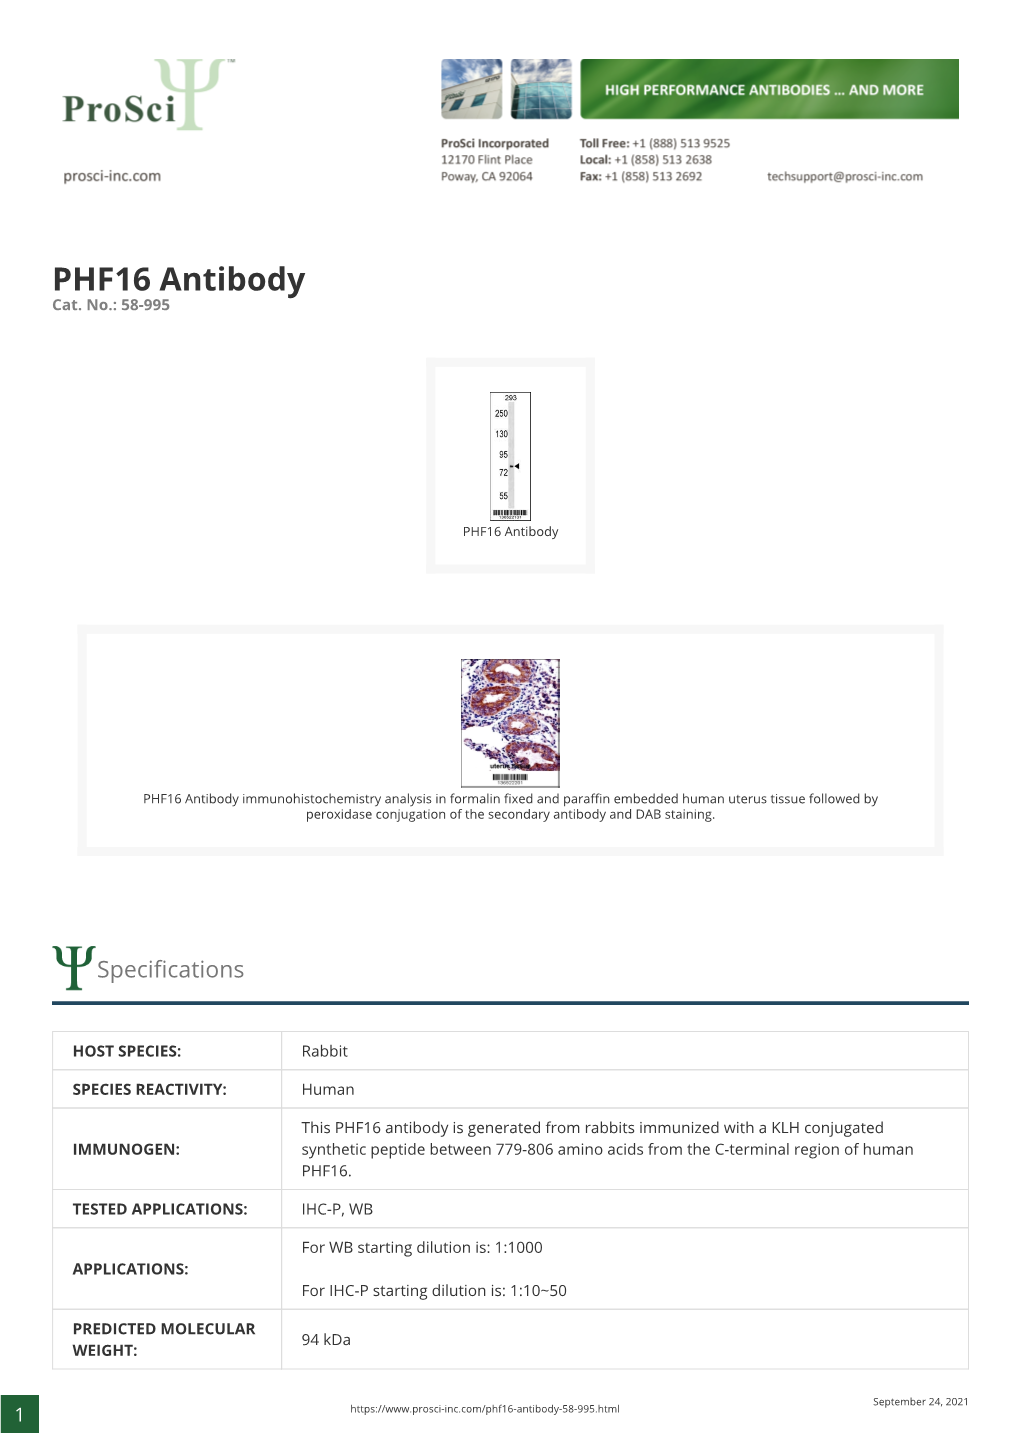 PHF16 Antibody Cat